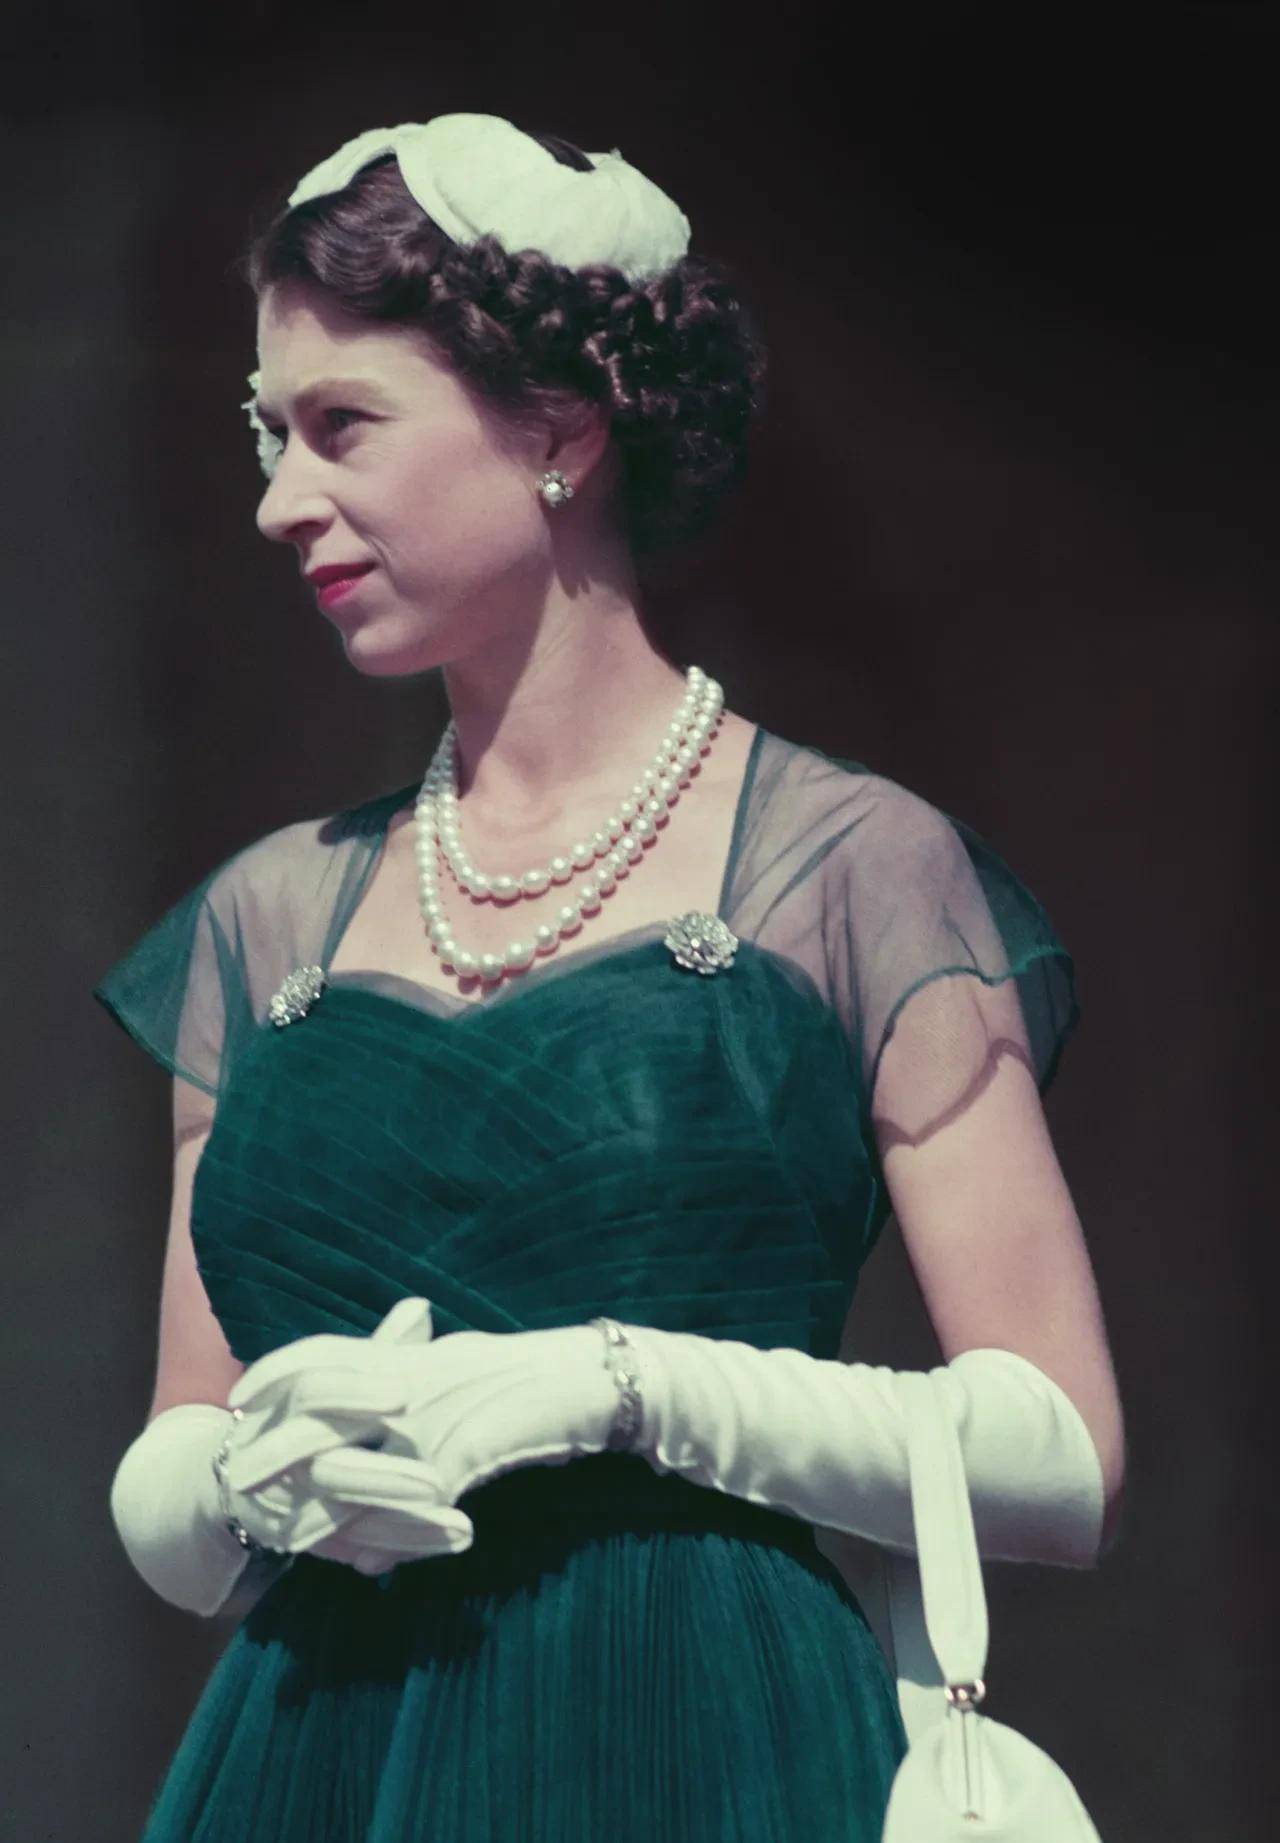 女王伊丽莎白二世图片